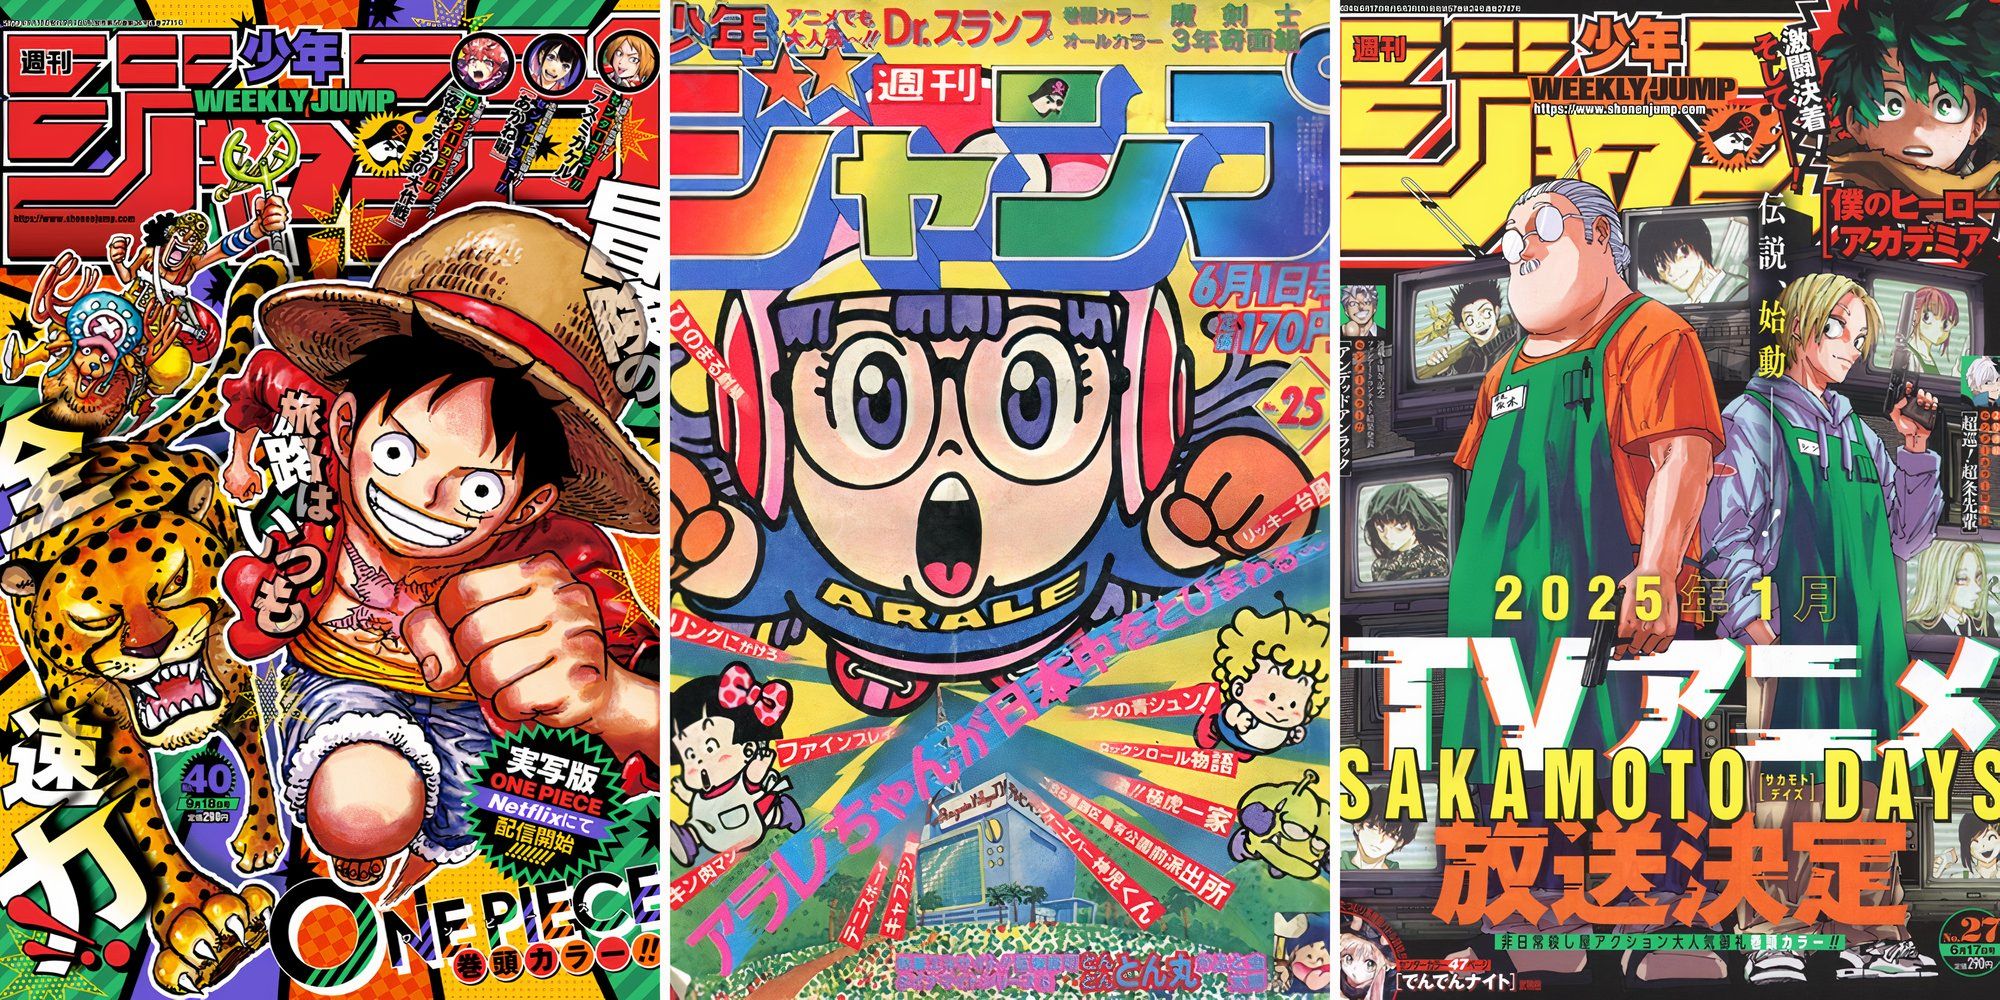 Las 10 mejores portadas de manga de la Weekly Shonen Jump